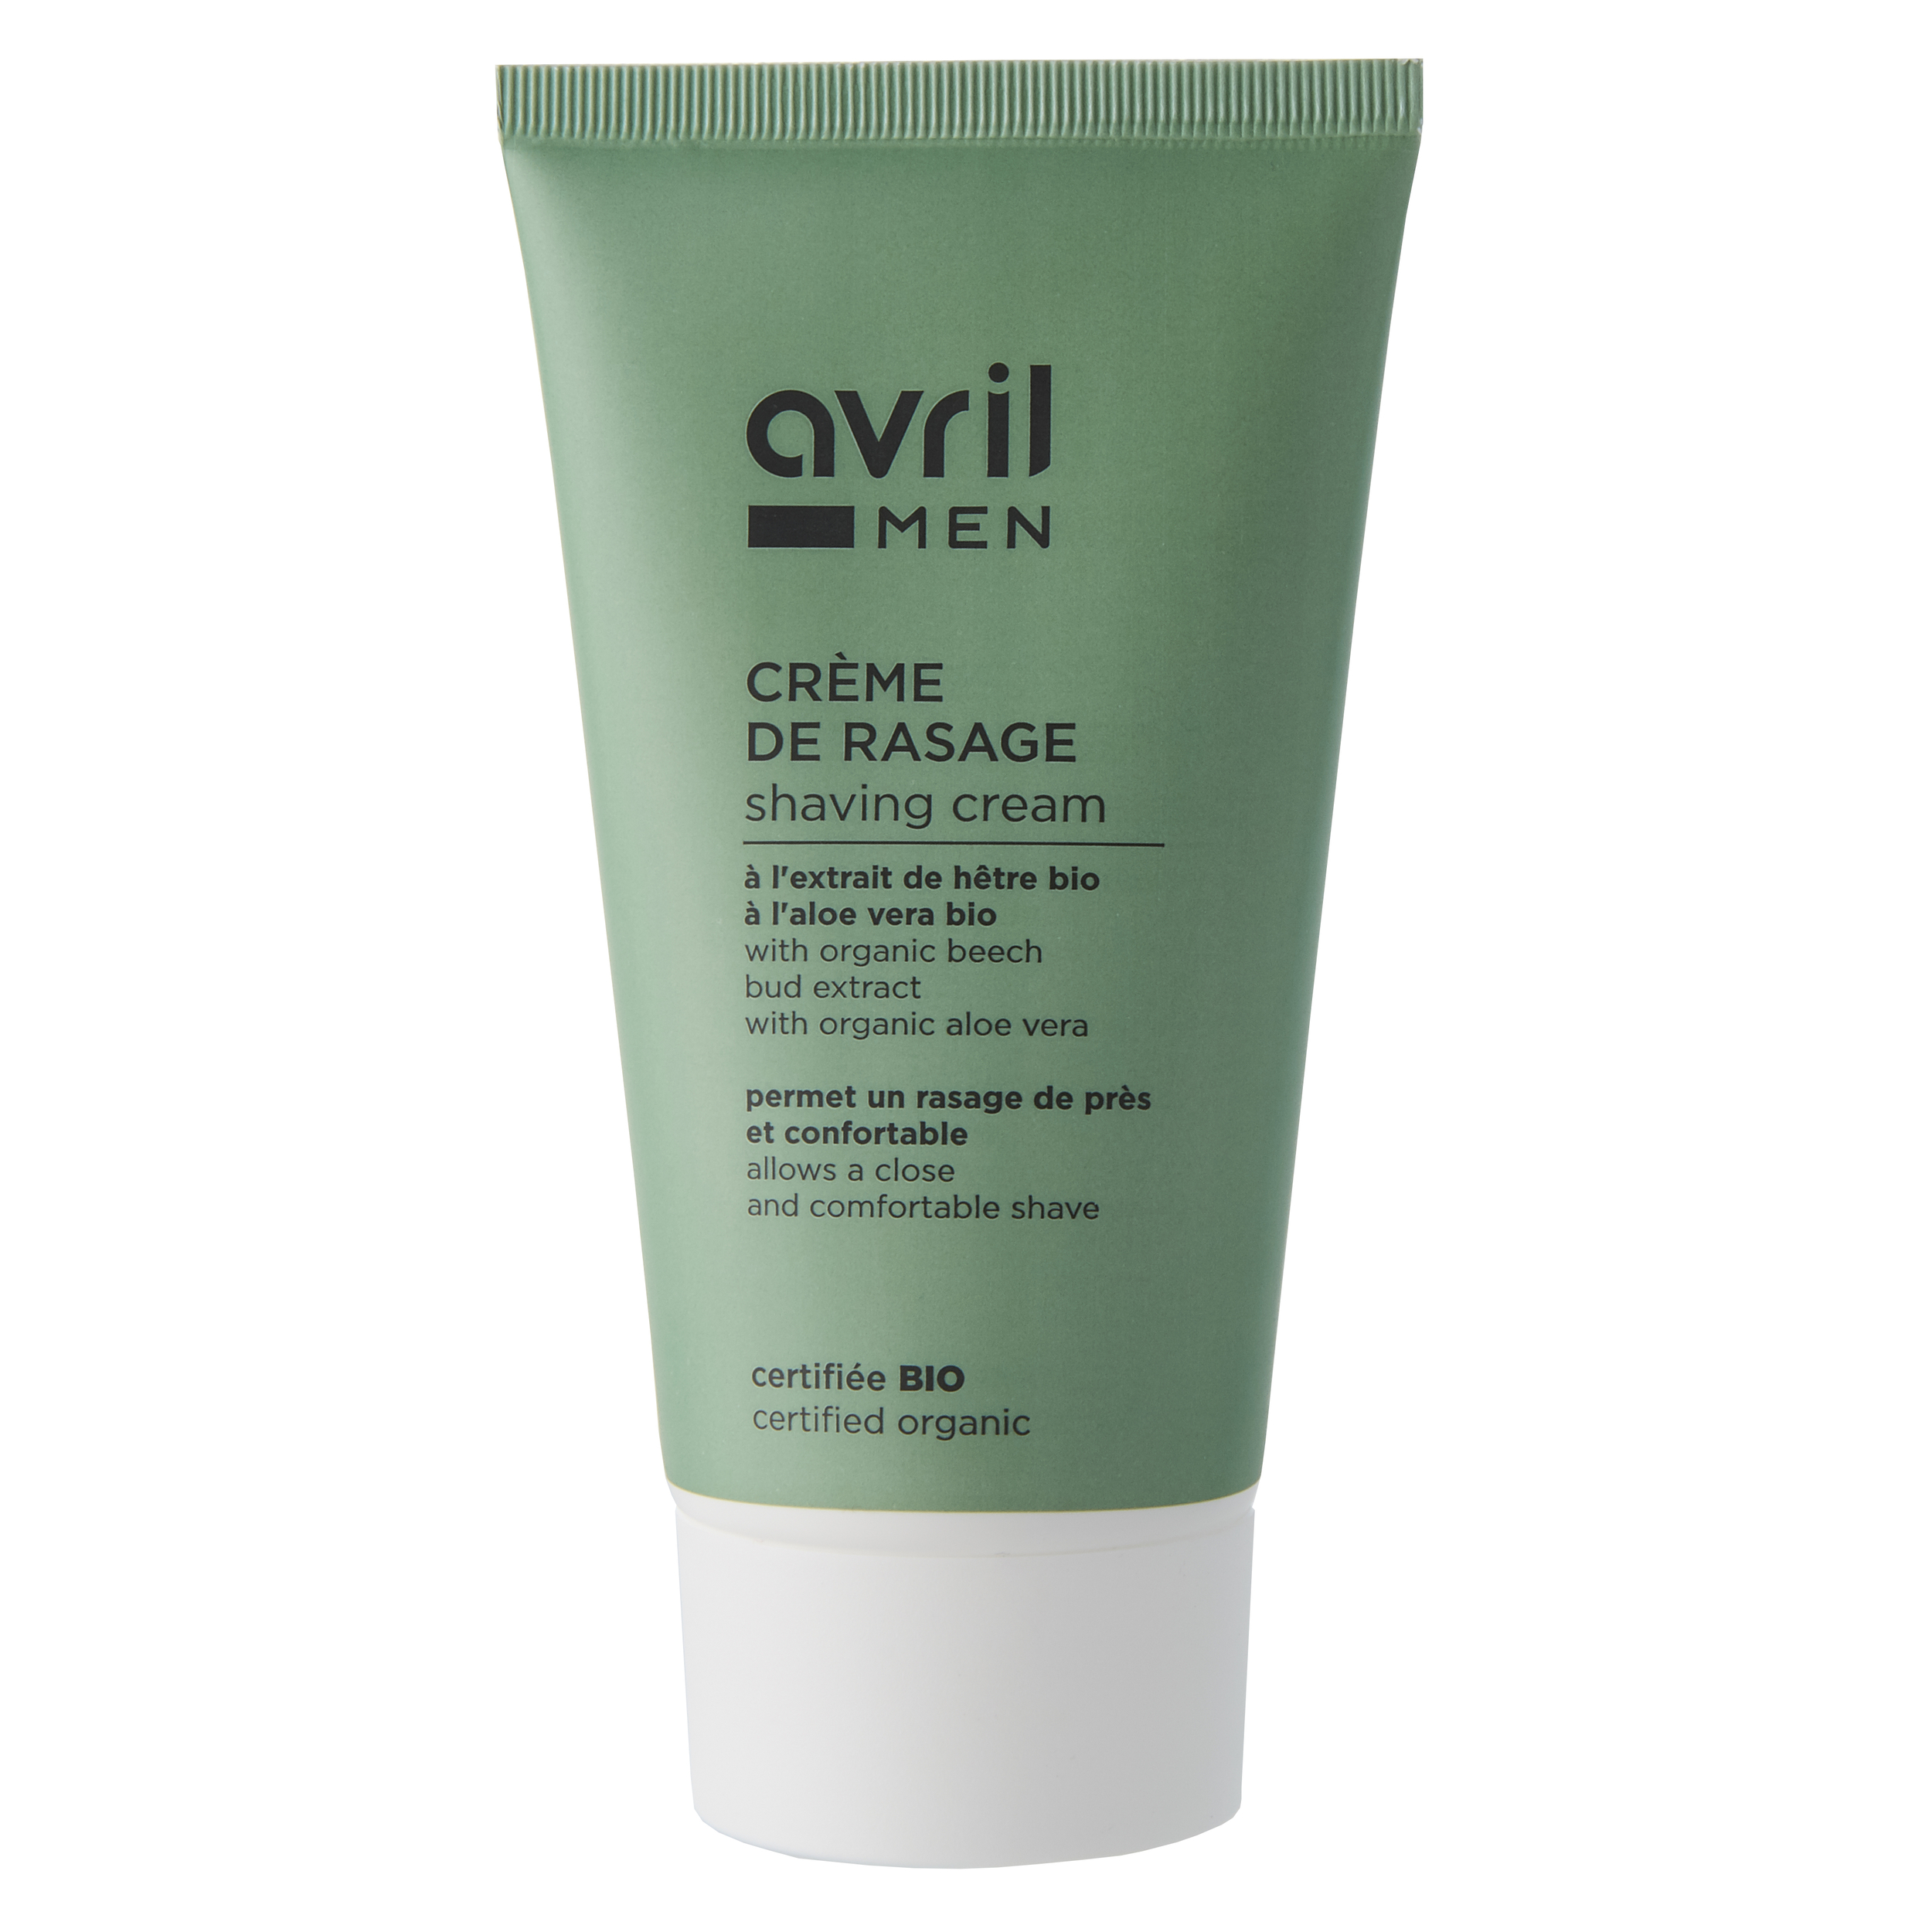 Crème de rasage Homme - 150ml - Certifiée bio - AVRIL